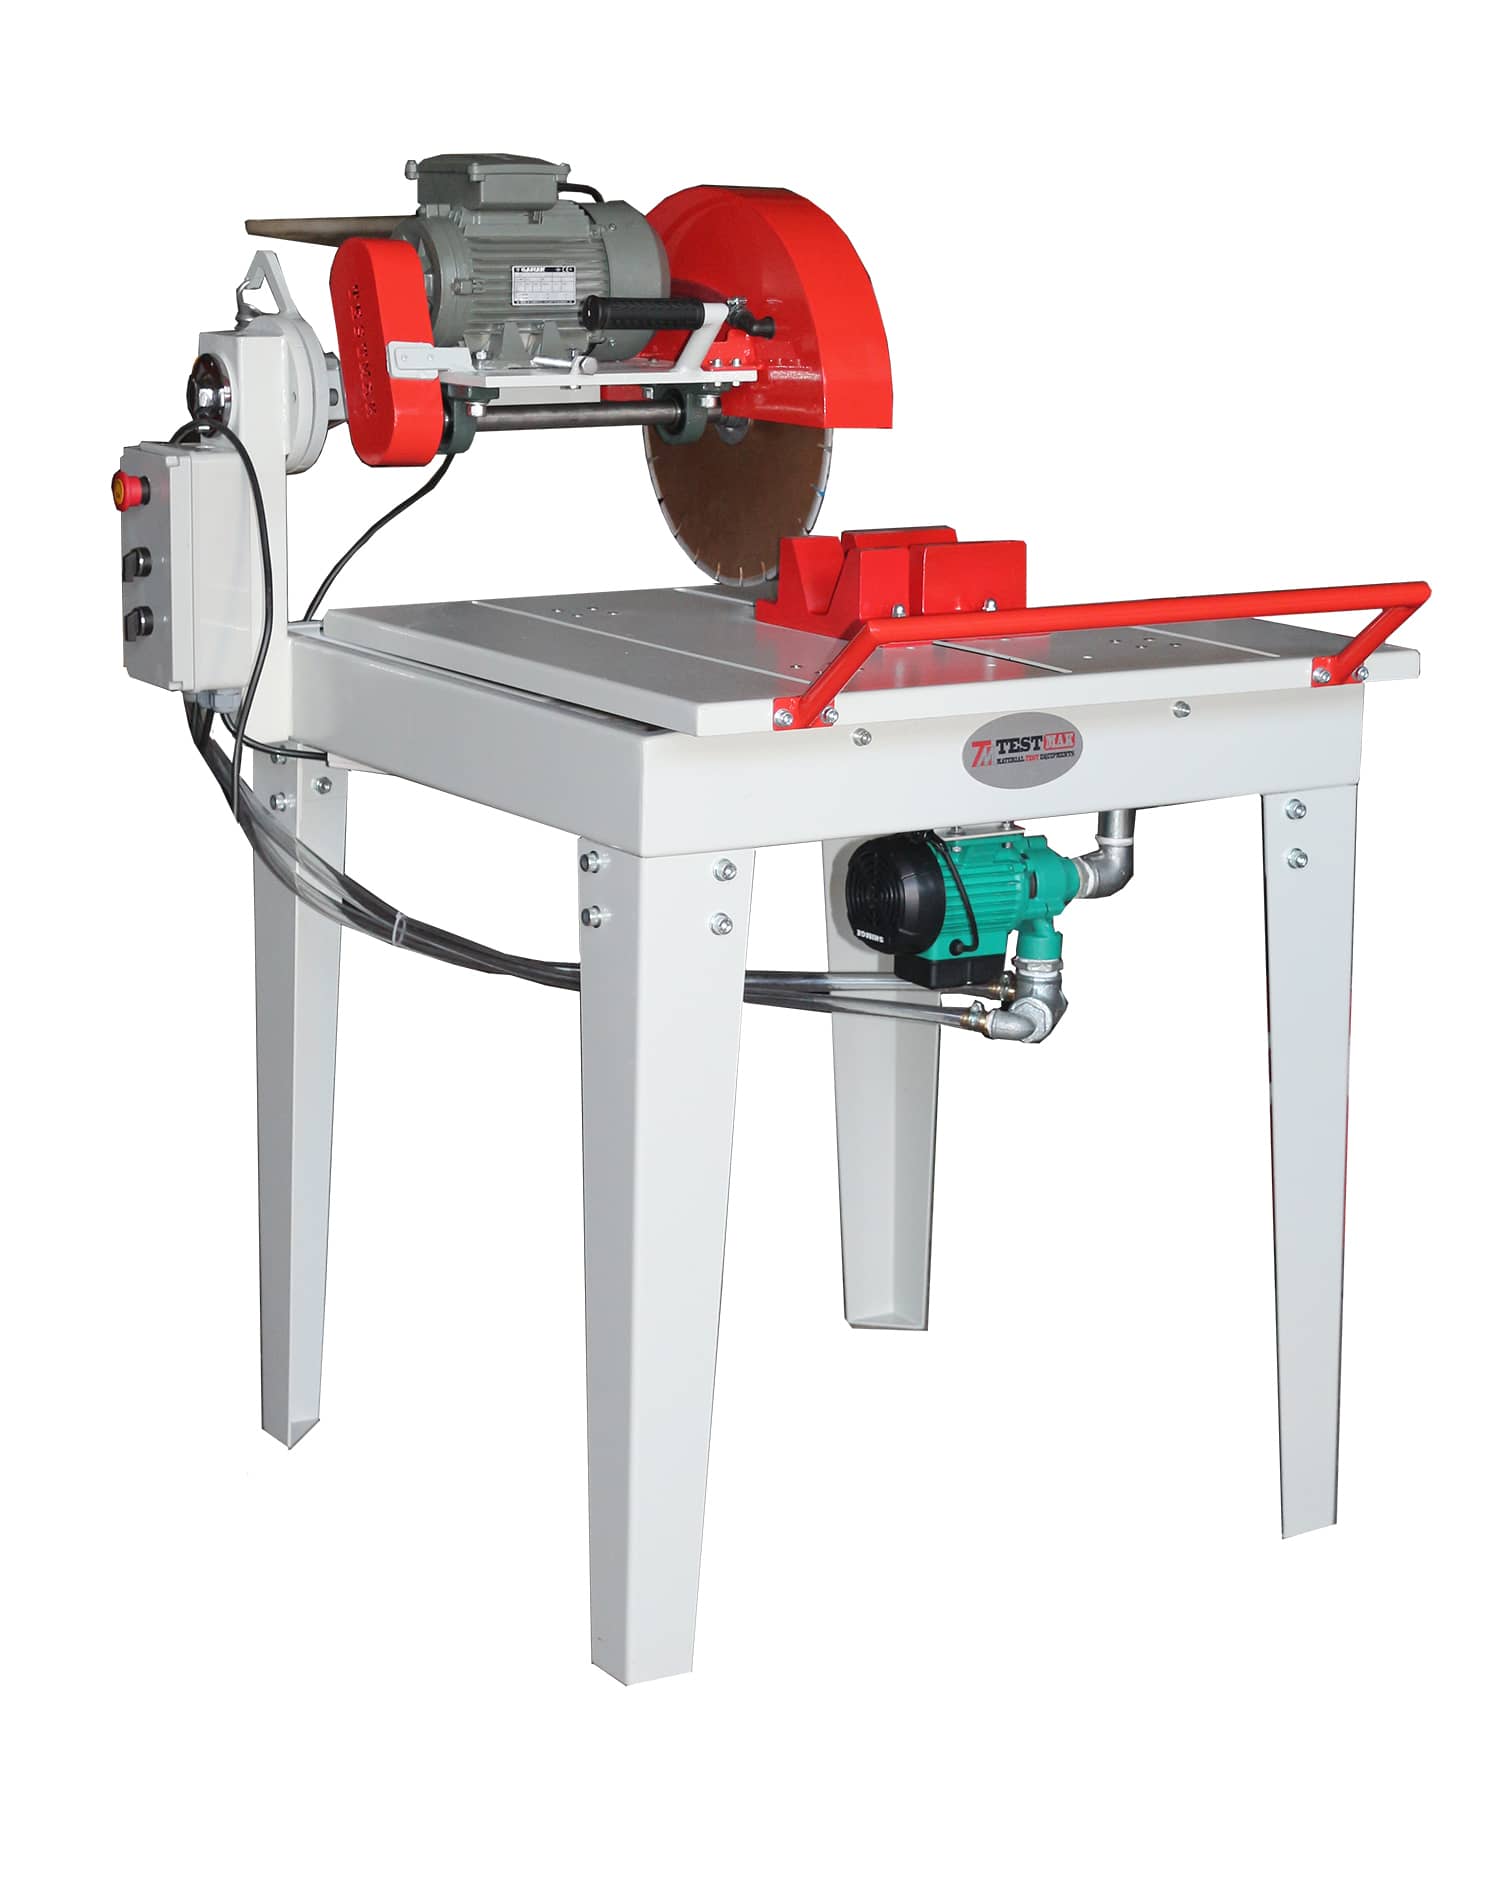 Machine de découpe type table pour béton spécimen - Preparation of concrete sample  - Testmak Material Testing Equipment